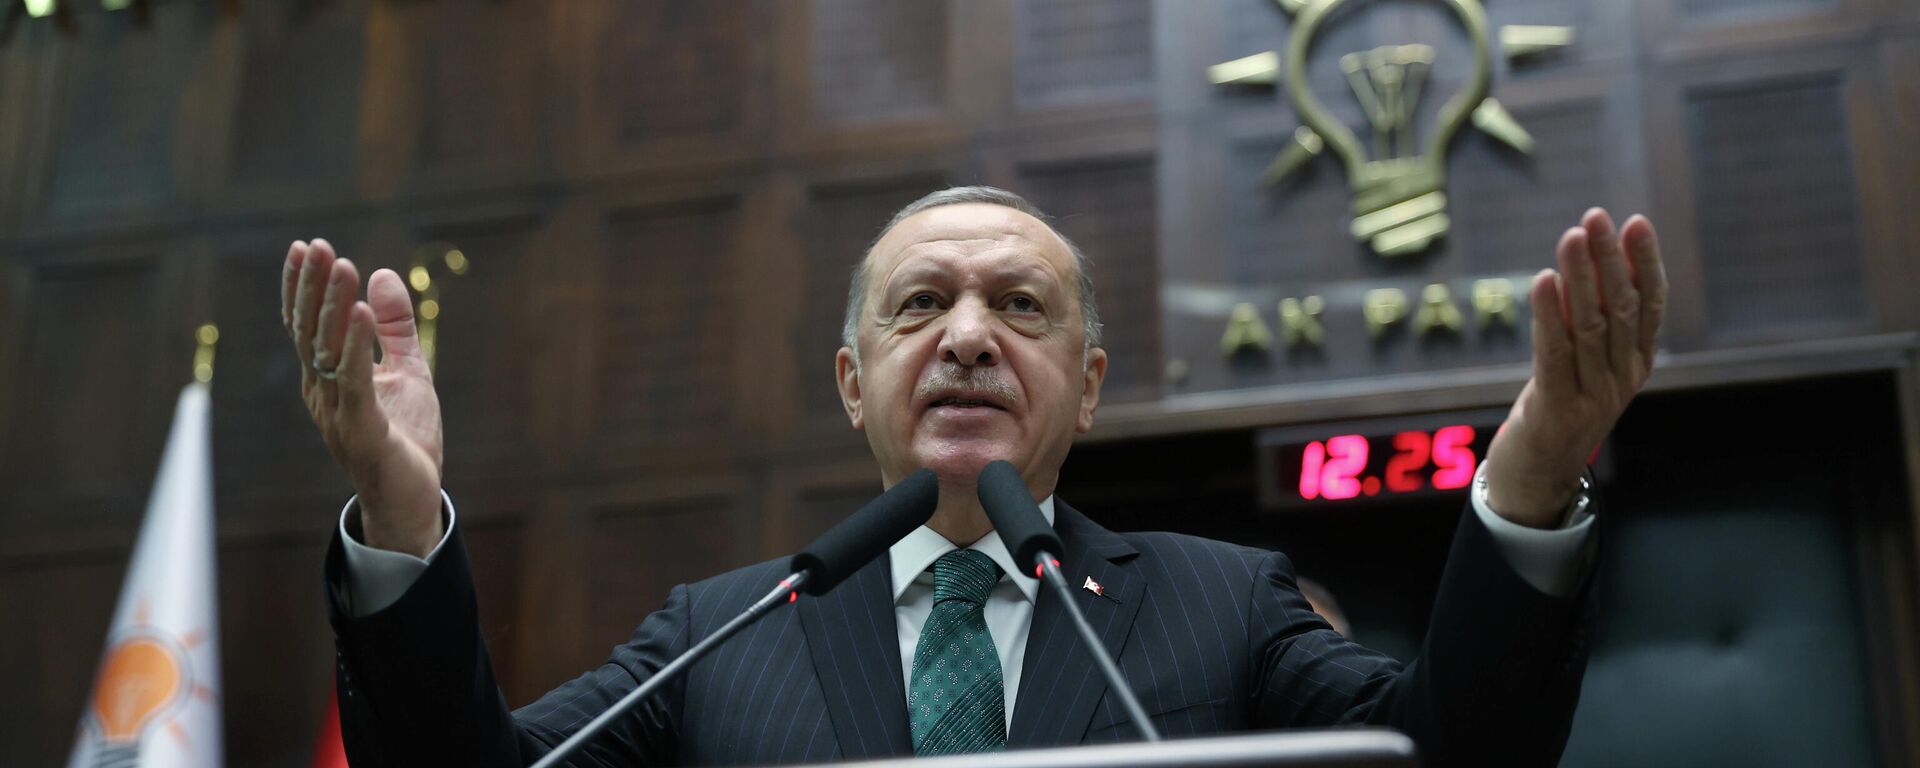 El presidente de Turquía, Recep Tayyip Erdogan - Sputnik Mundo, 1920, 17.05.2021